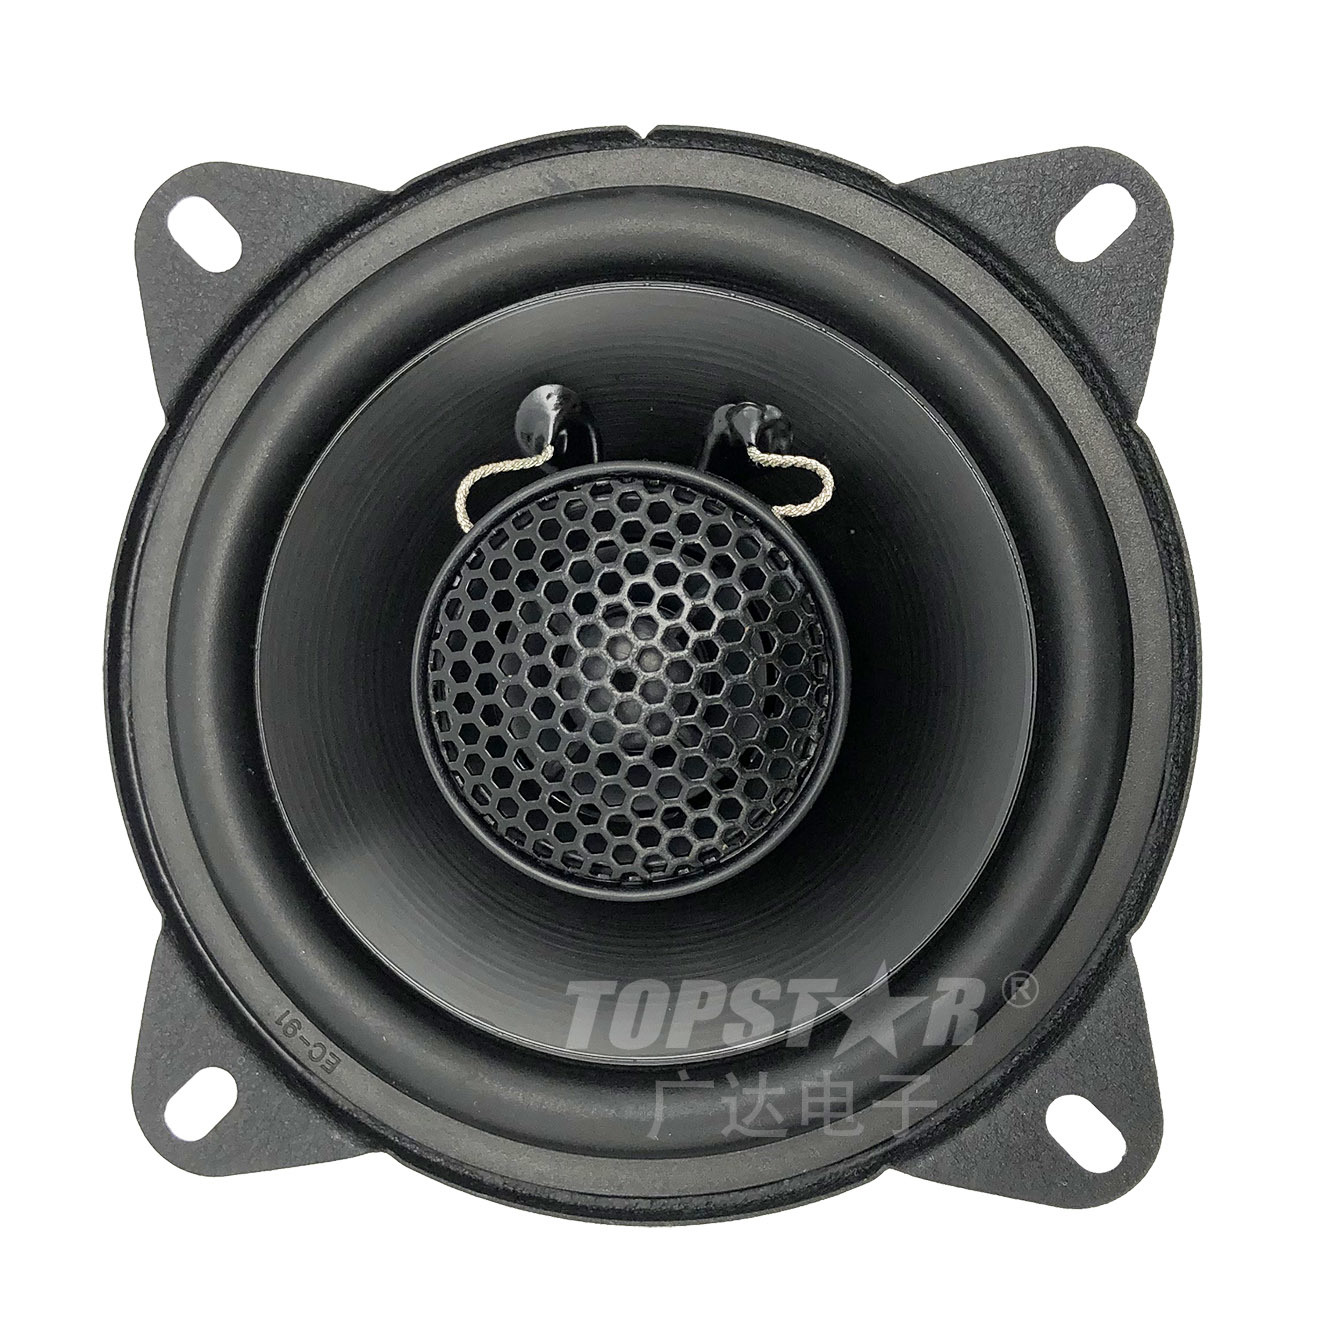 Stereo Speaker Speaker Box Mini Speaker Car Speaker Car Audio Sound Speaker Hjg-3102